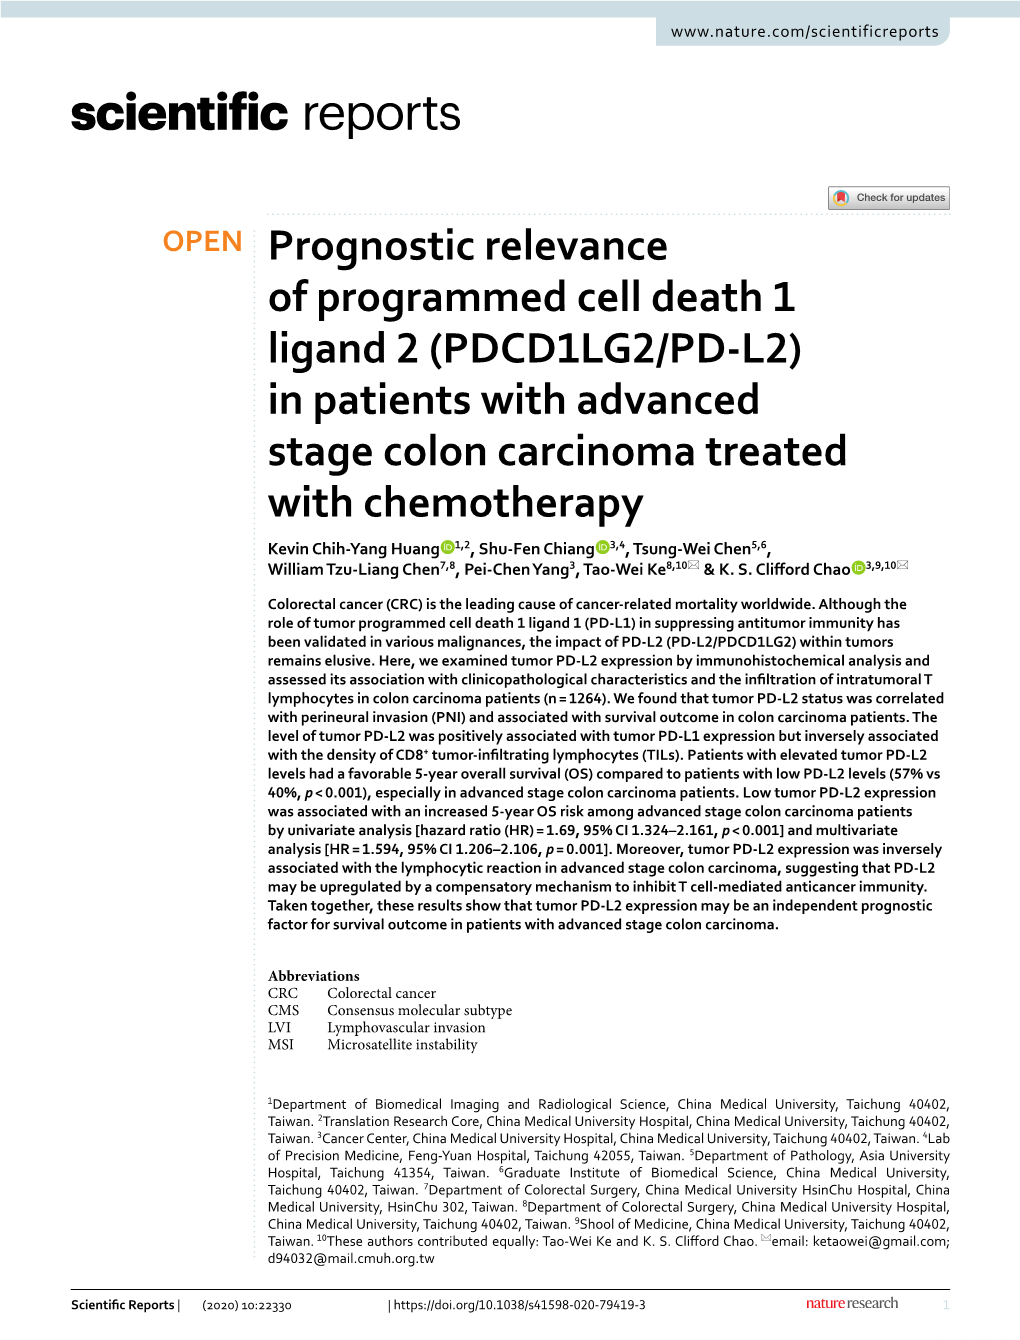 Prognostic Relevance of Programmed Cell Death 1 Ligand 2 (PDCD1LG2